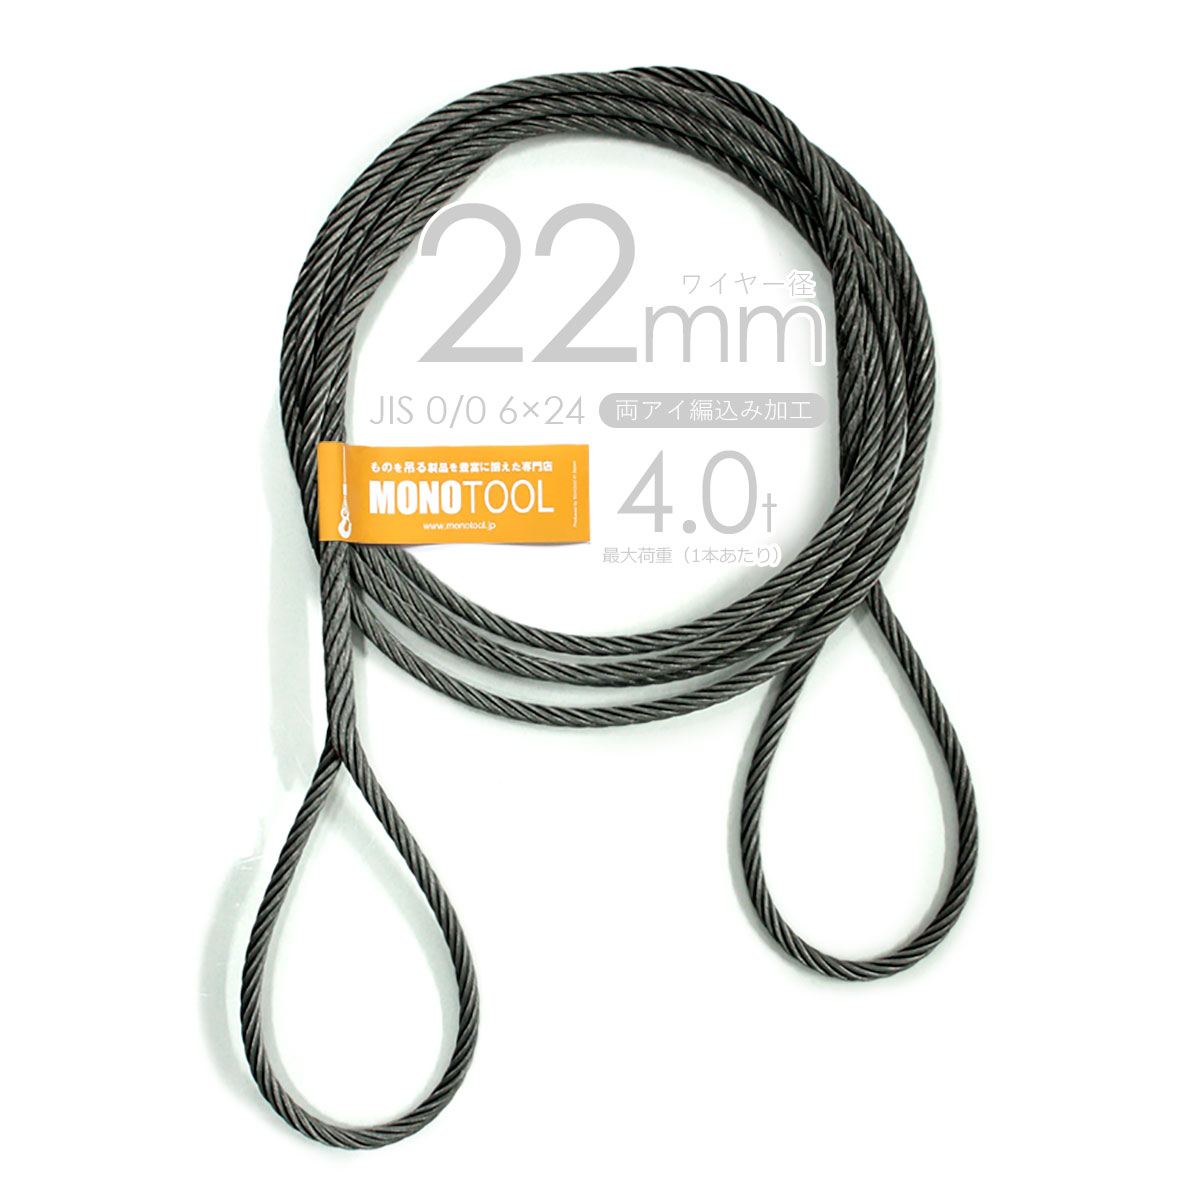 編み込み・フレミッシュ加工 JIS黒(O/O) 22mm(7分) 玉掛ワイヤロープ 2本組